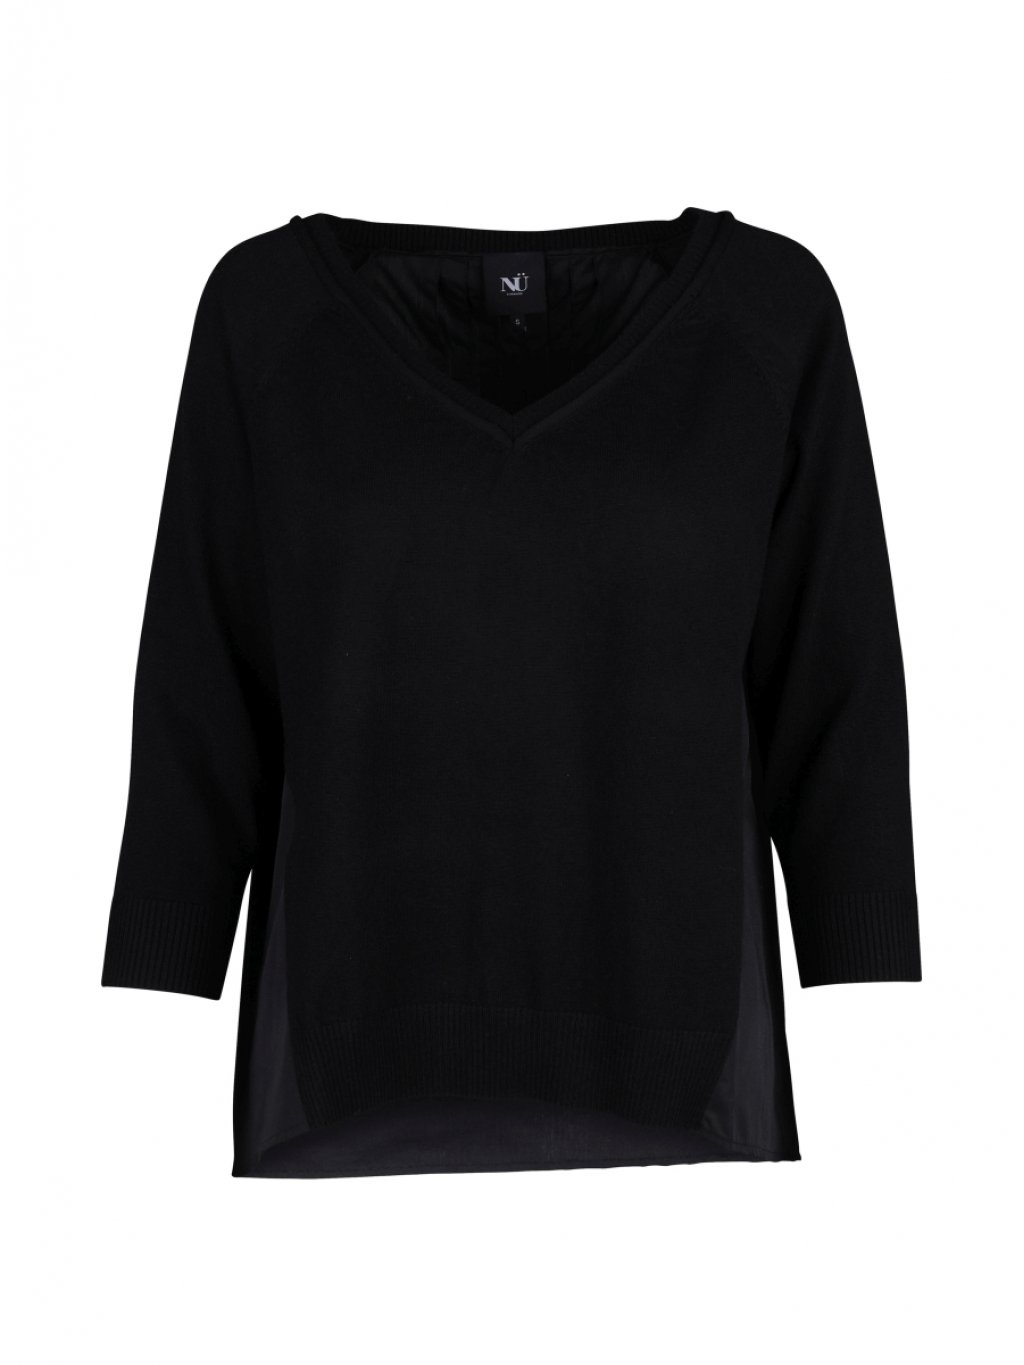 Svetr Nu Denmark 7961-50 černý s košilí